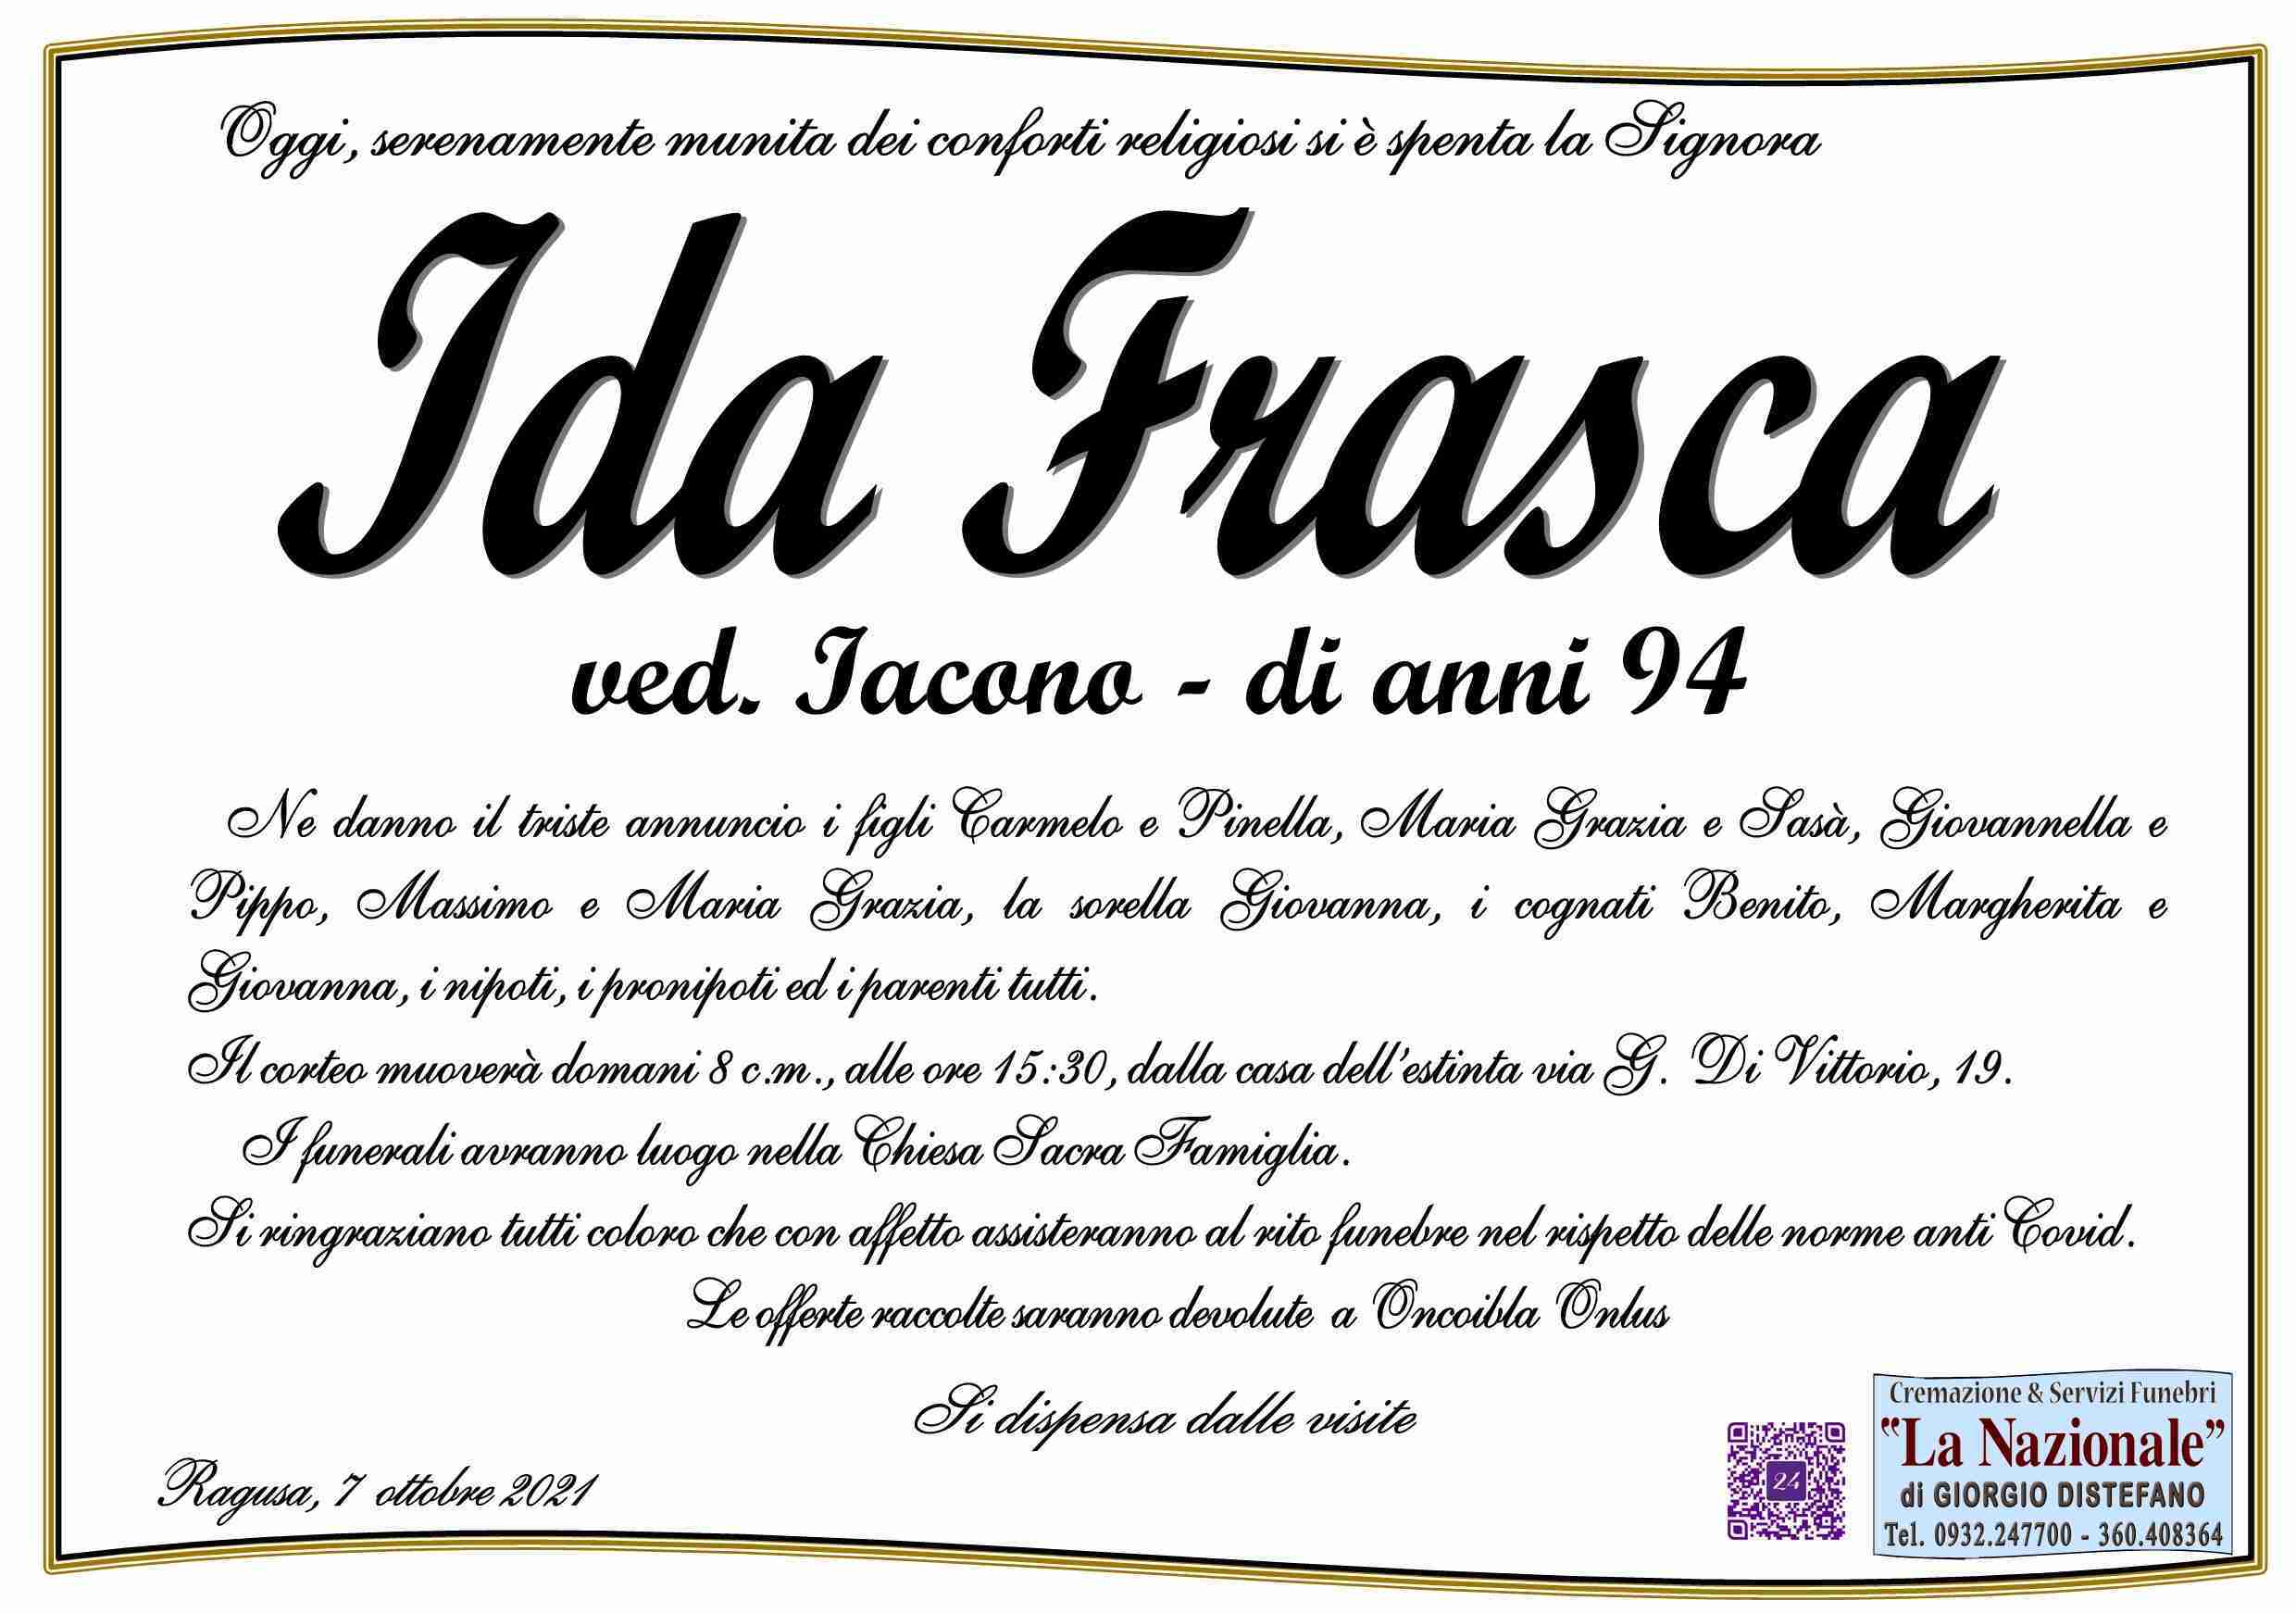 Ida Frasca